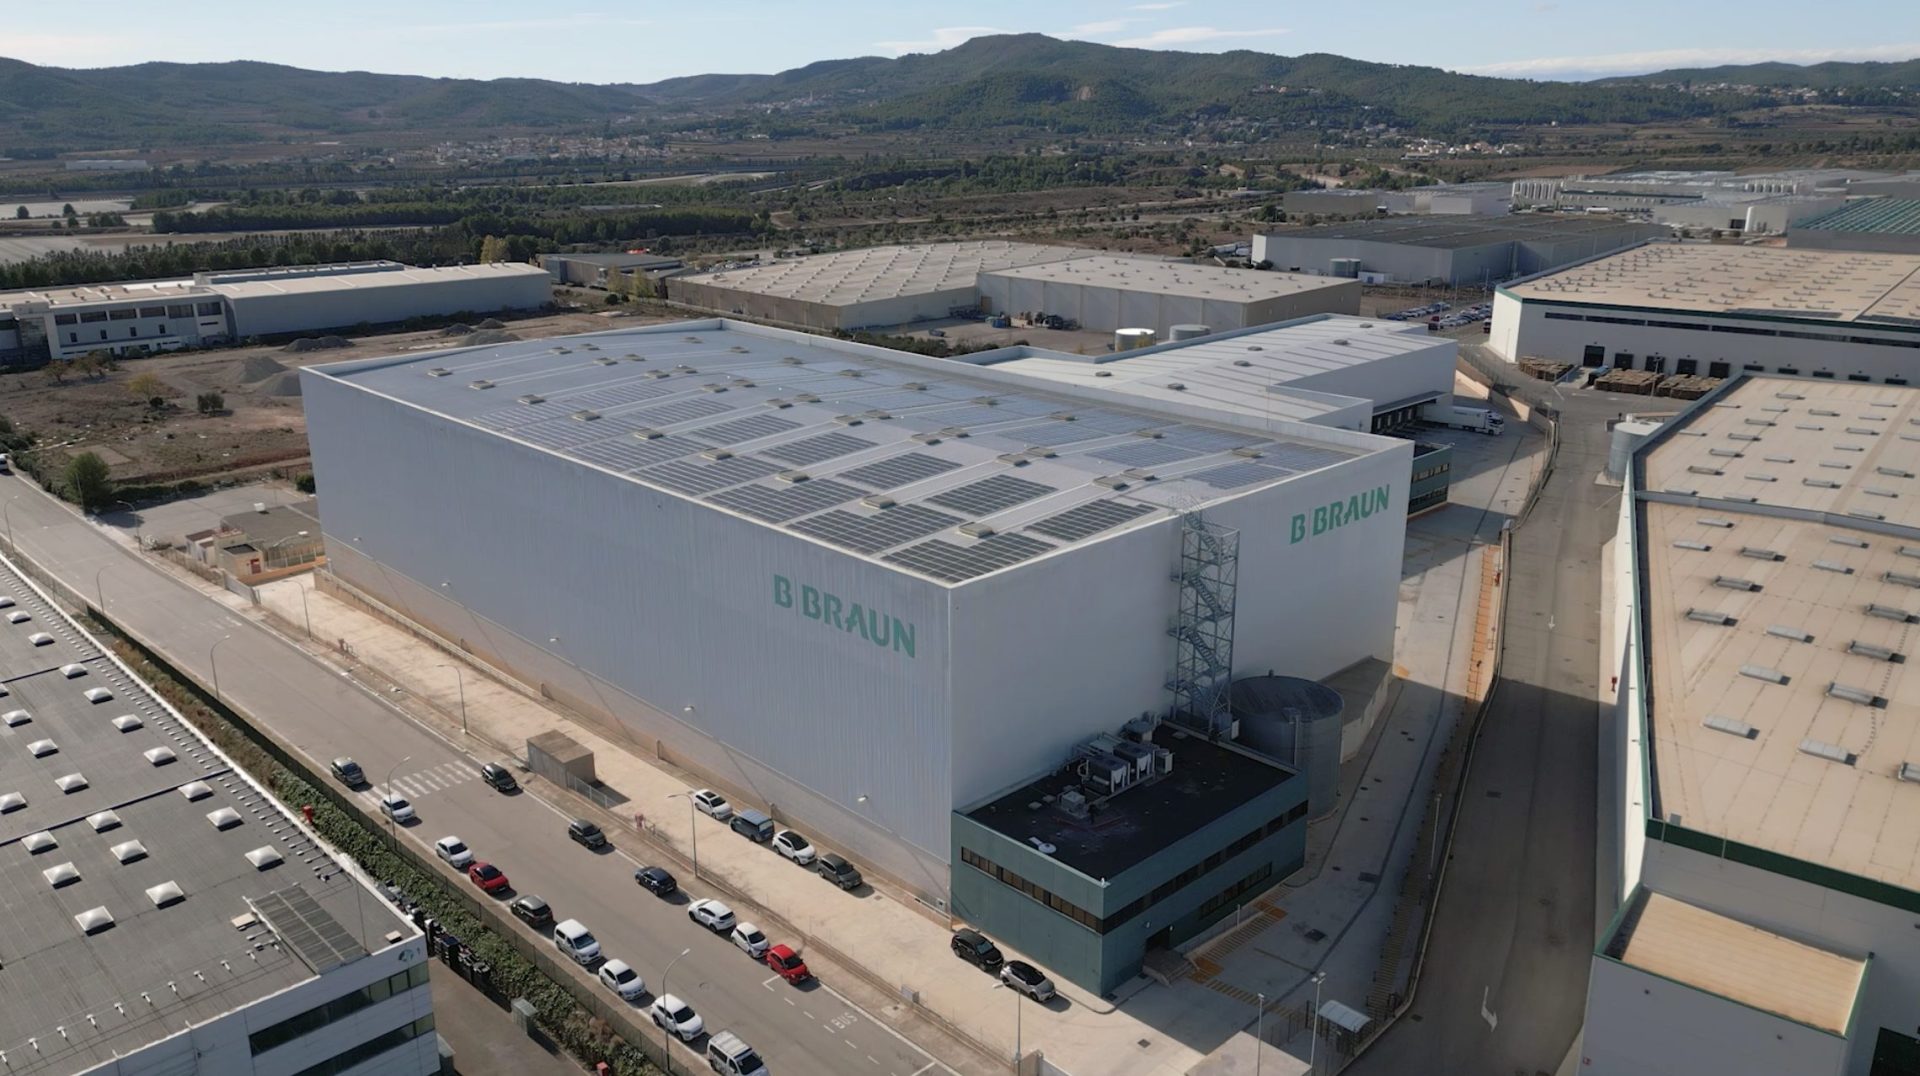 Vista aérea del centro logístico del Grupo B. Braun en Santa Oliva (Tarragona, donde se encuentra la mayor planta fotovoltaica de la compañía en España, gracias a la instalación de 1.280 paneles. EFE/IMAGEN CEDIDA/B. BRAUN/SOLO USO EDITORIAL/CRÉDITO OBLIGATORIO